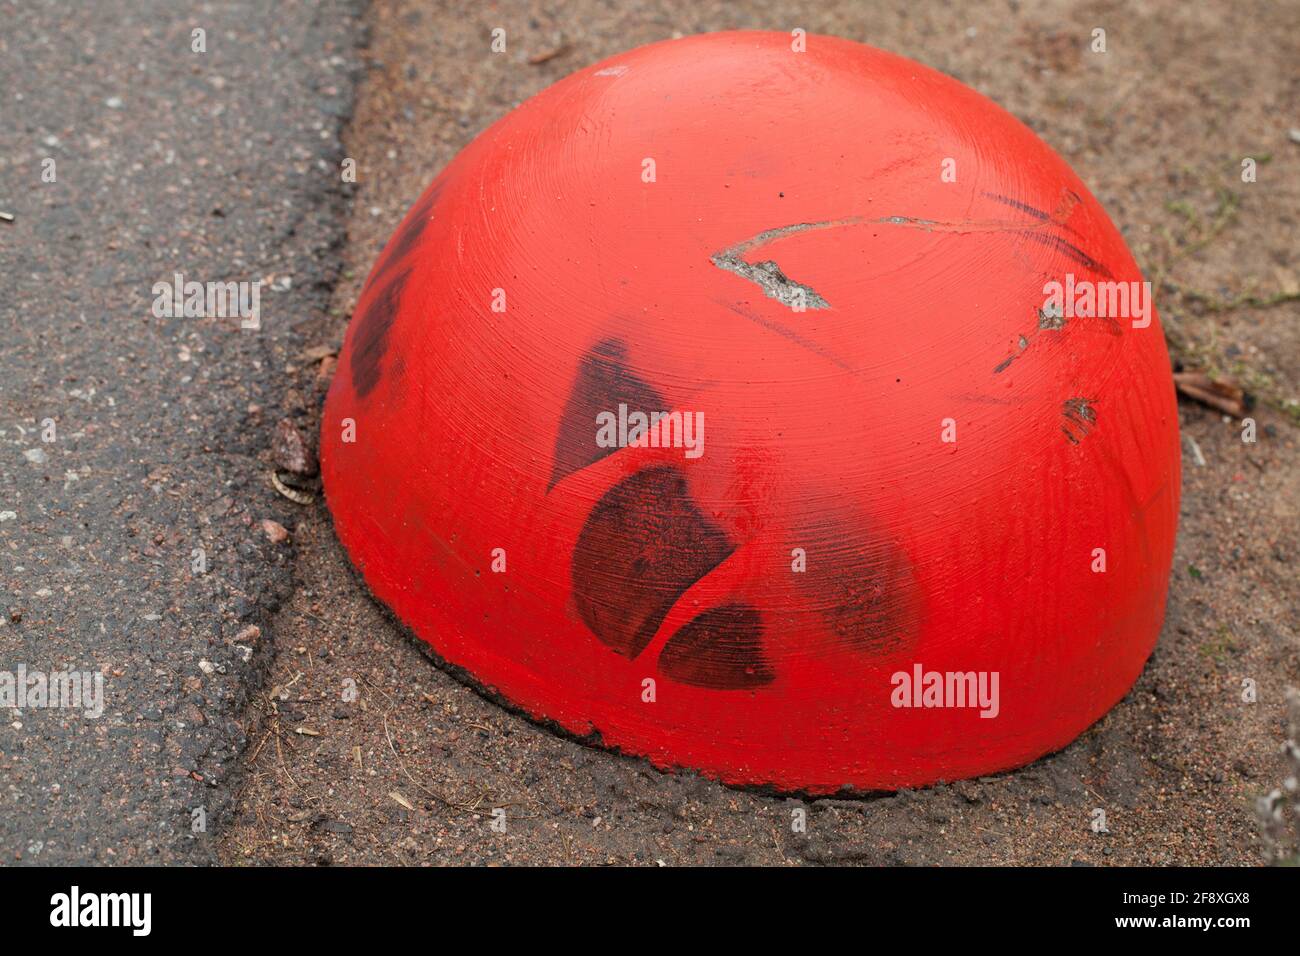 Timpano rosso in cemento anti-parcheggio a forma di emisfero, primo piano foto Foto Stock